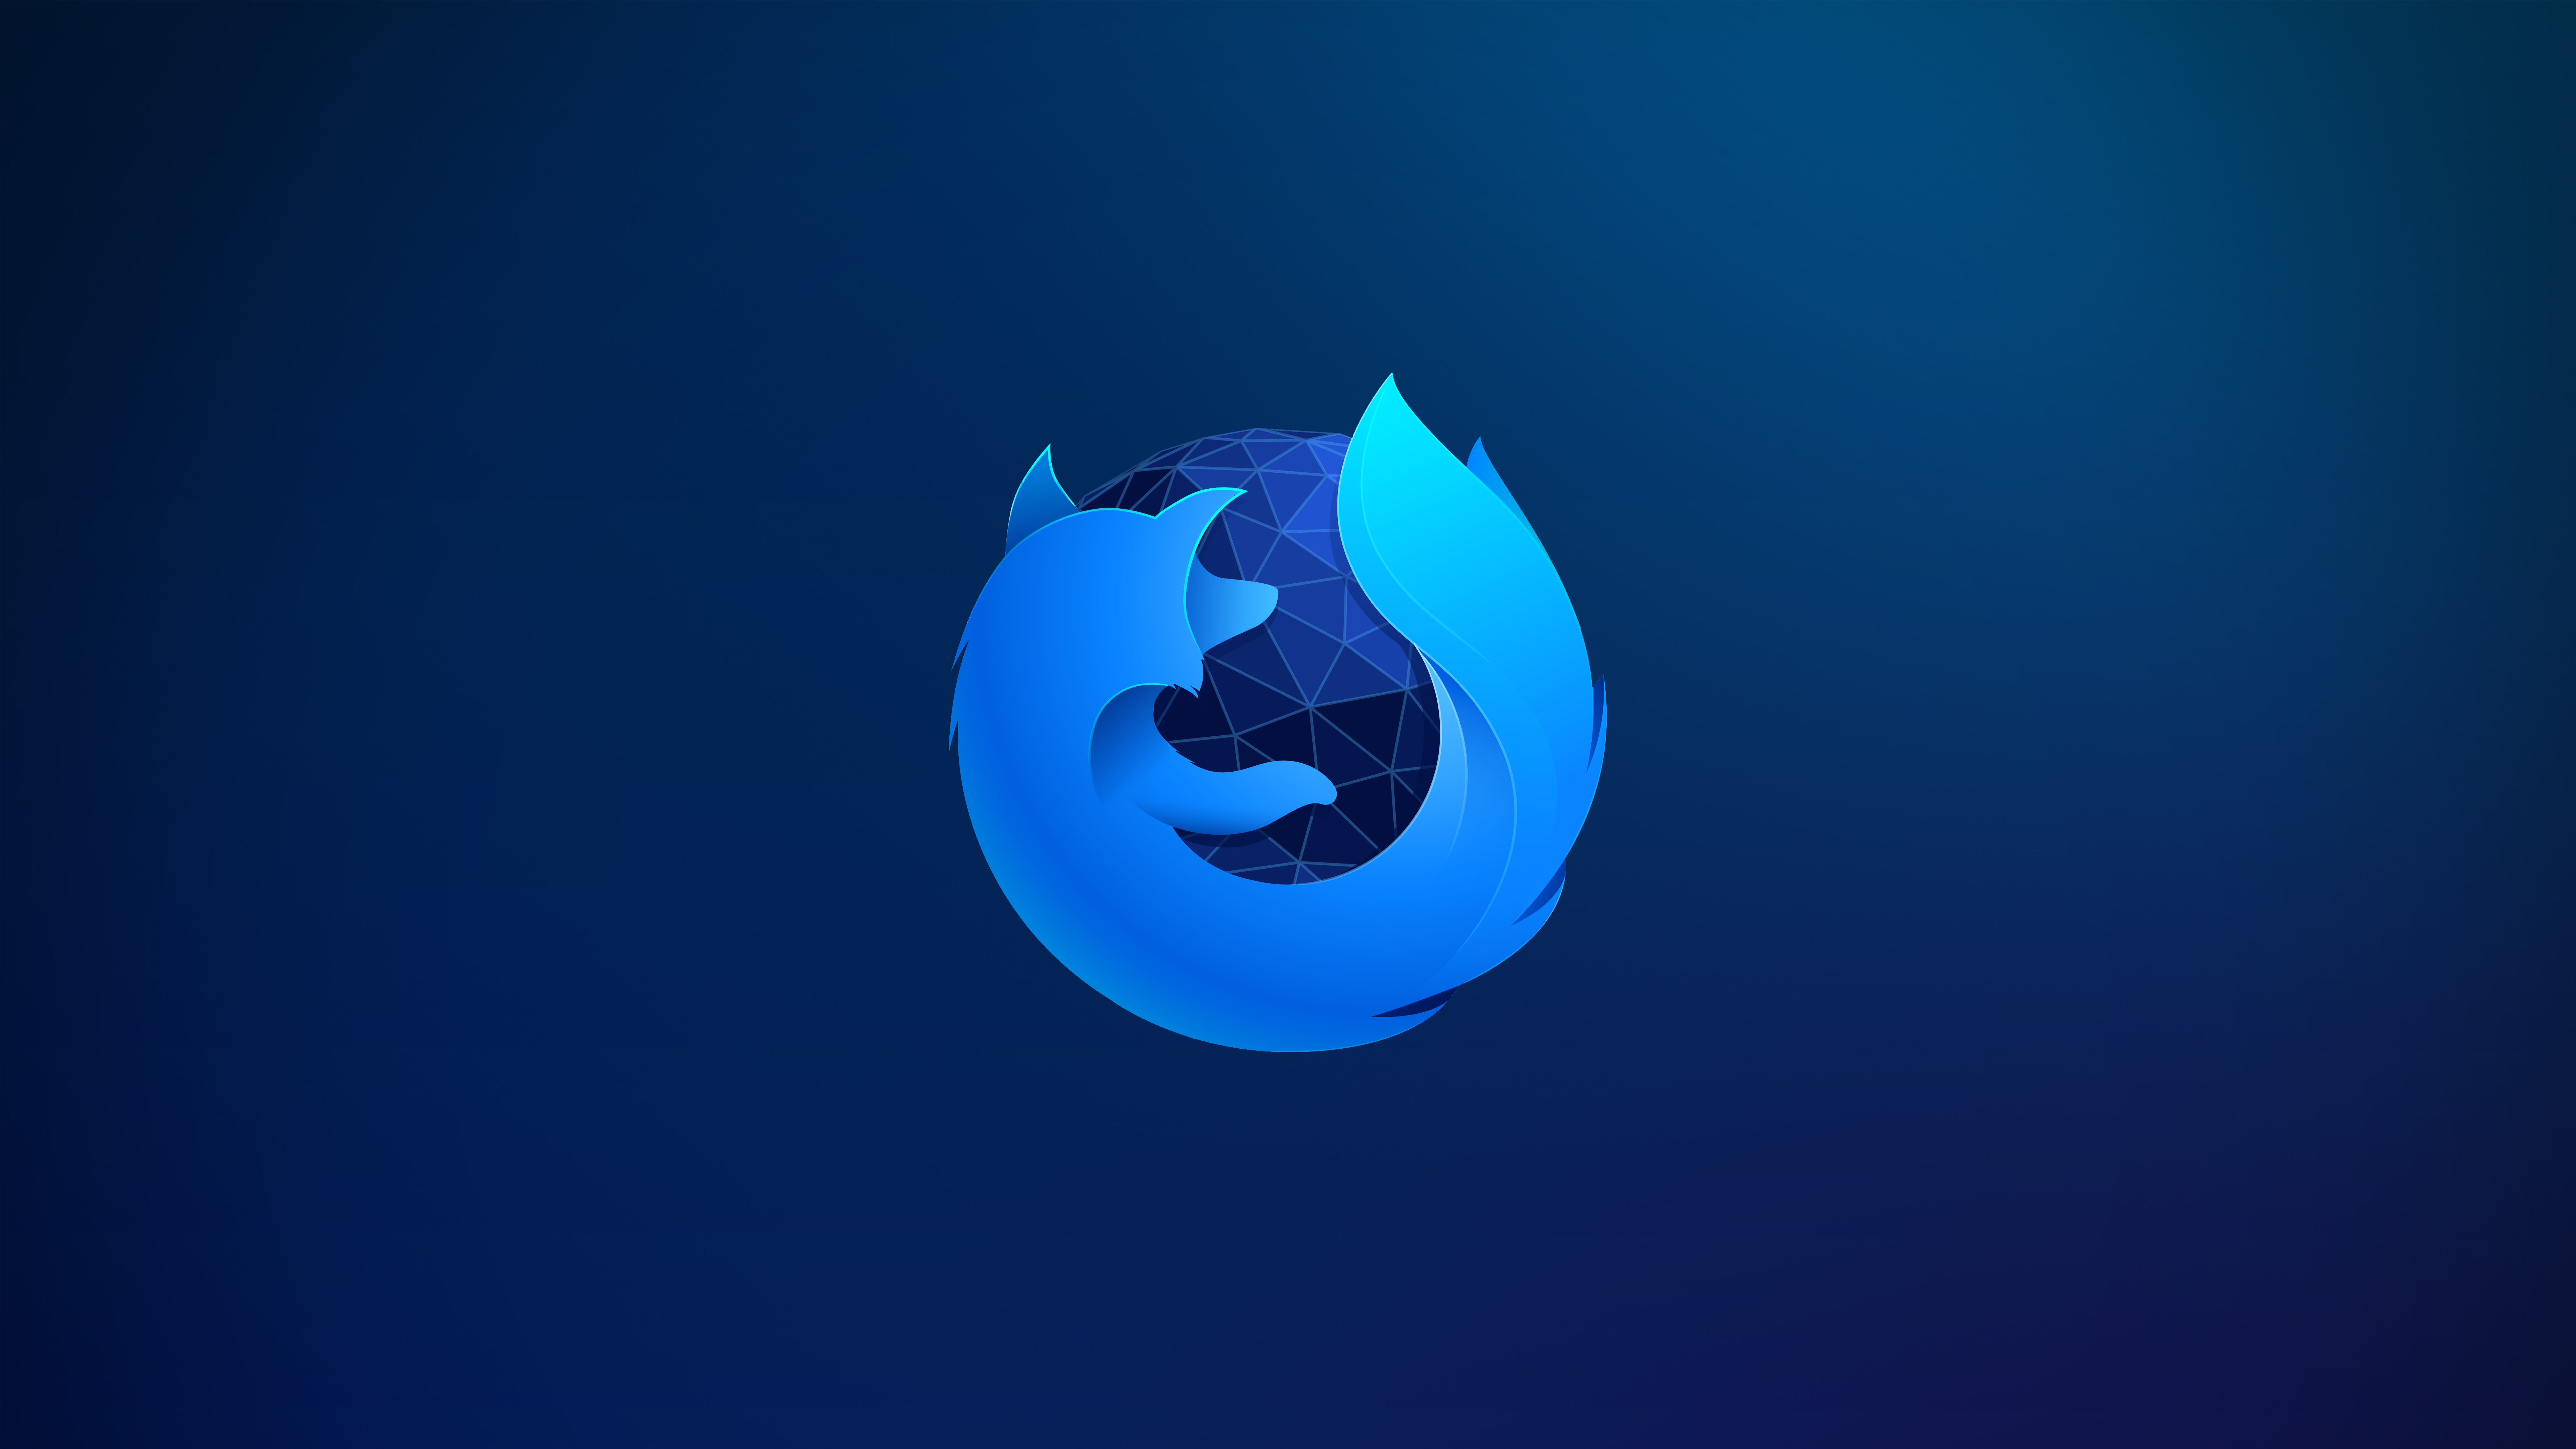 I Made A 8k Firefox Developer Edition Wallpaper